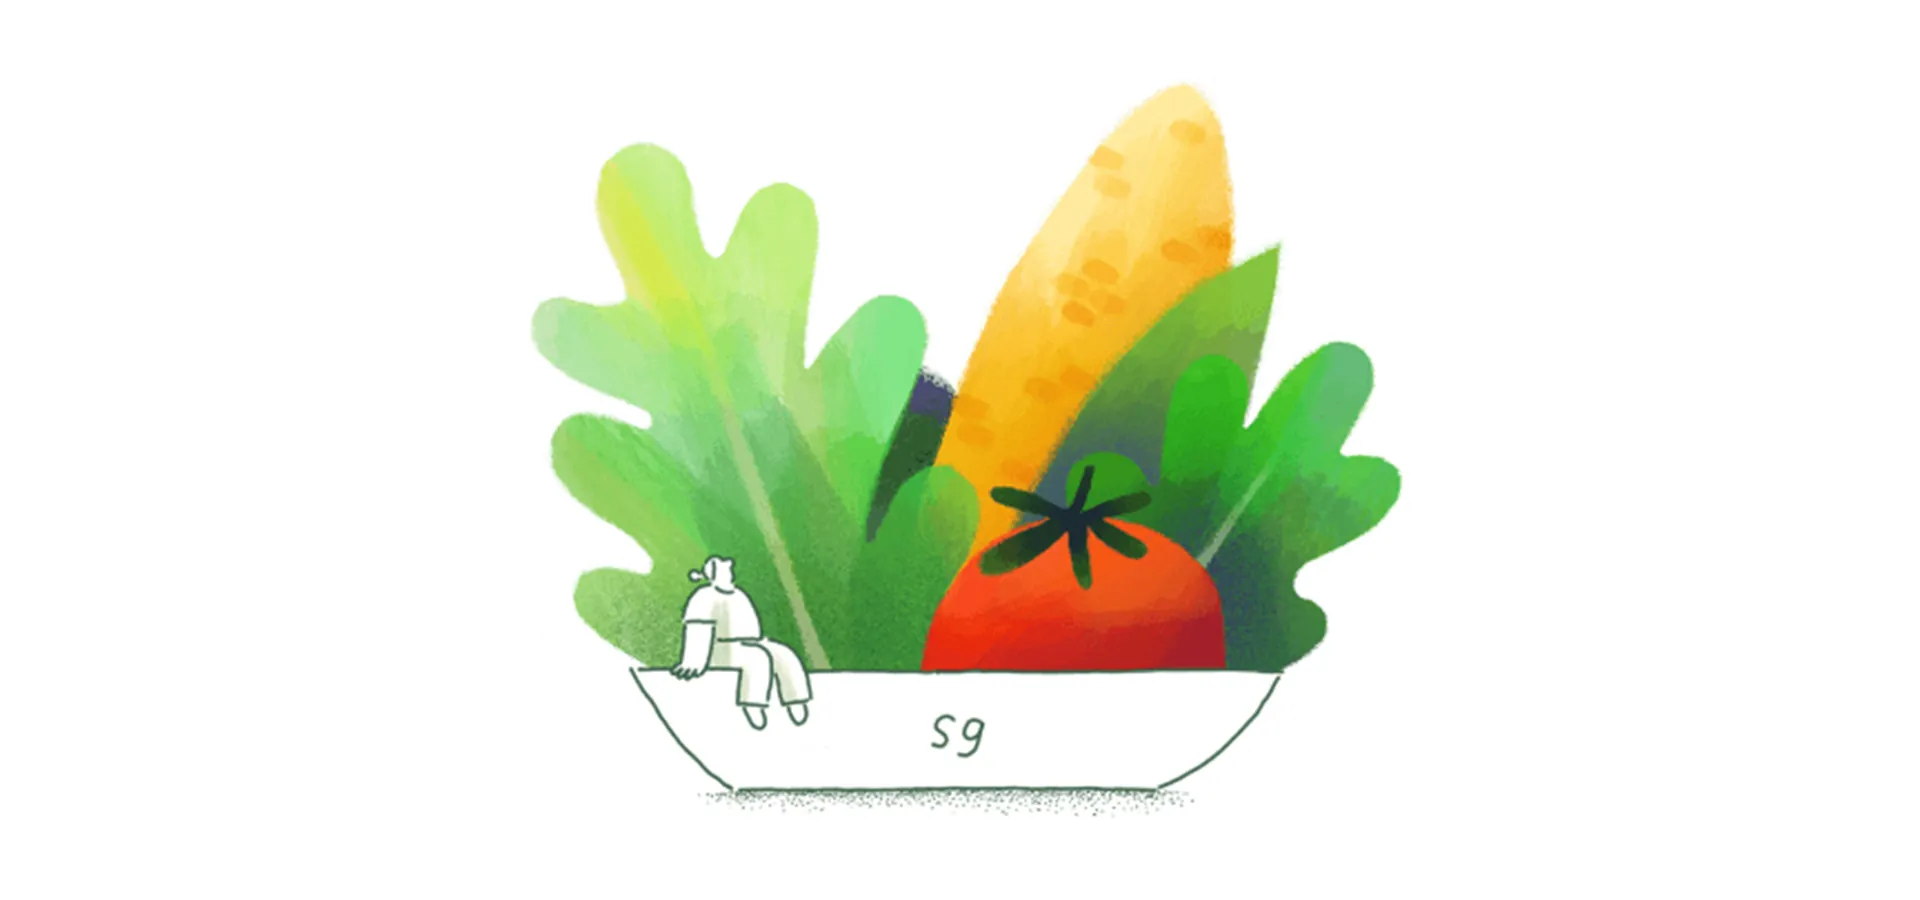 veggie bowl illustration